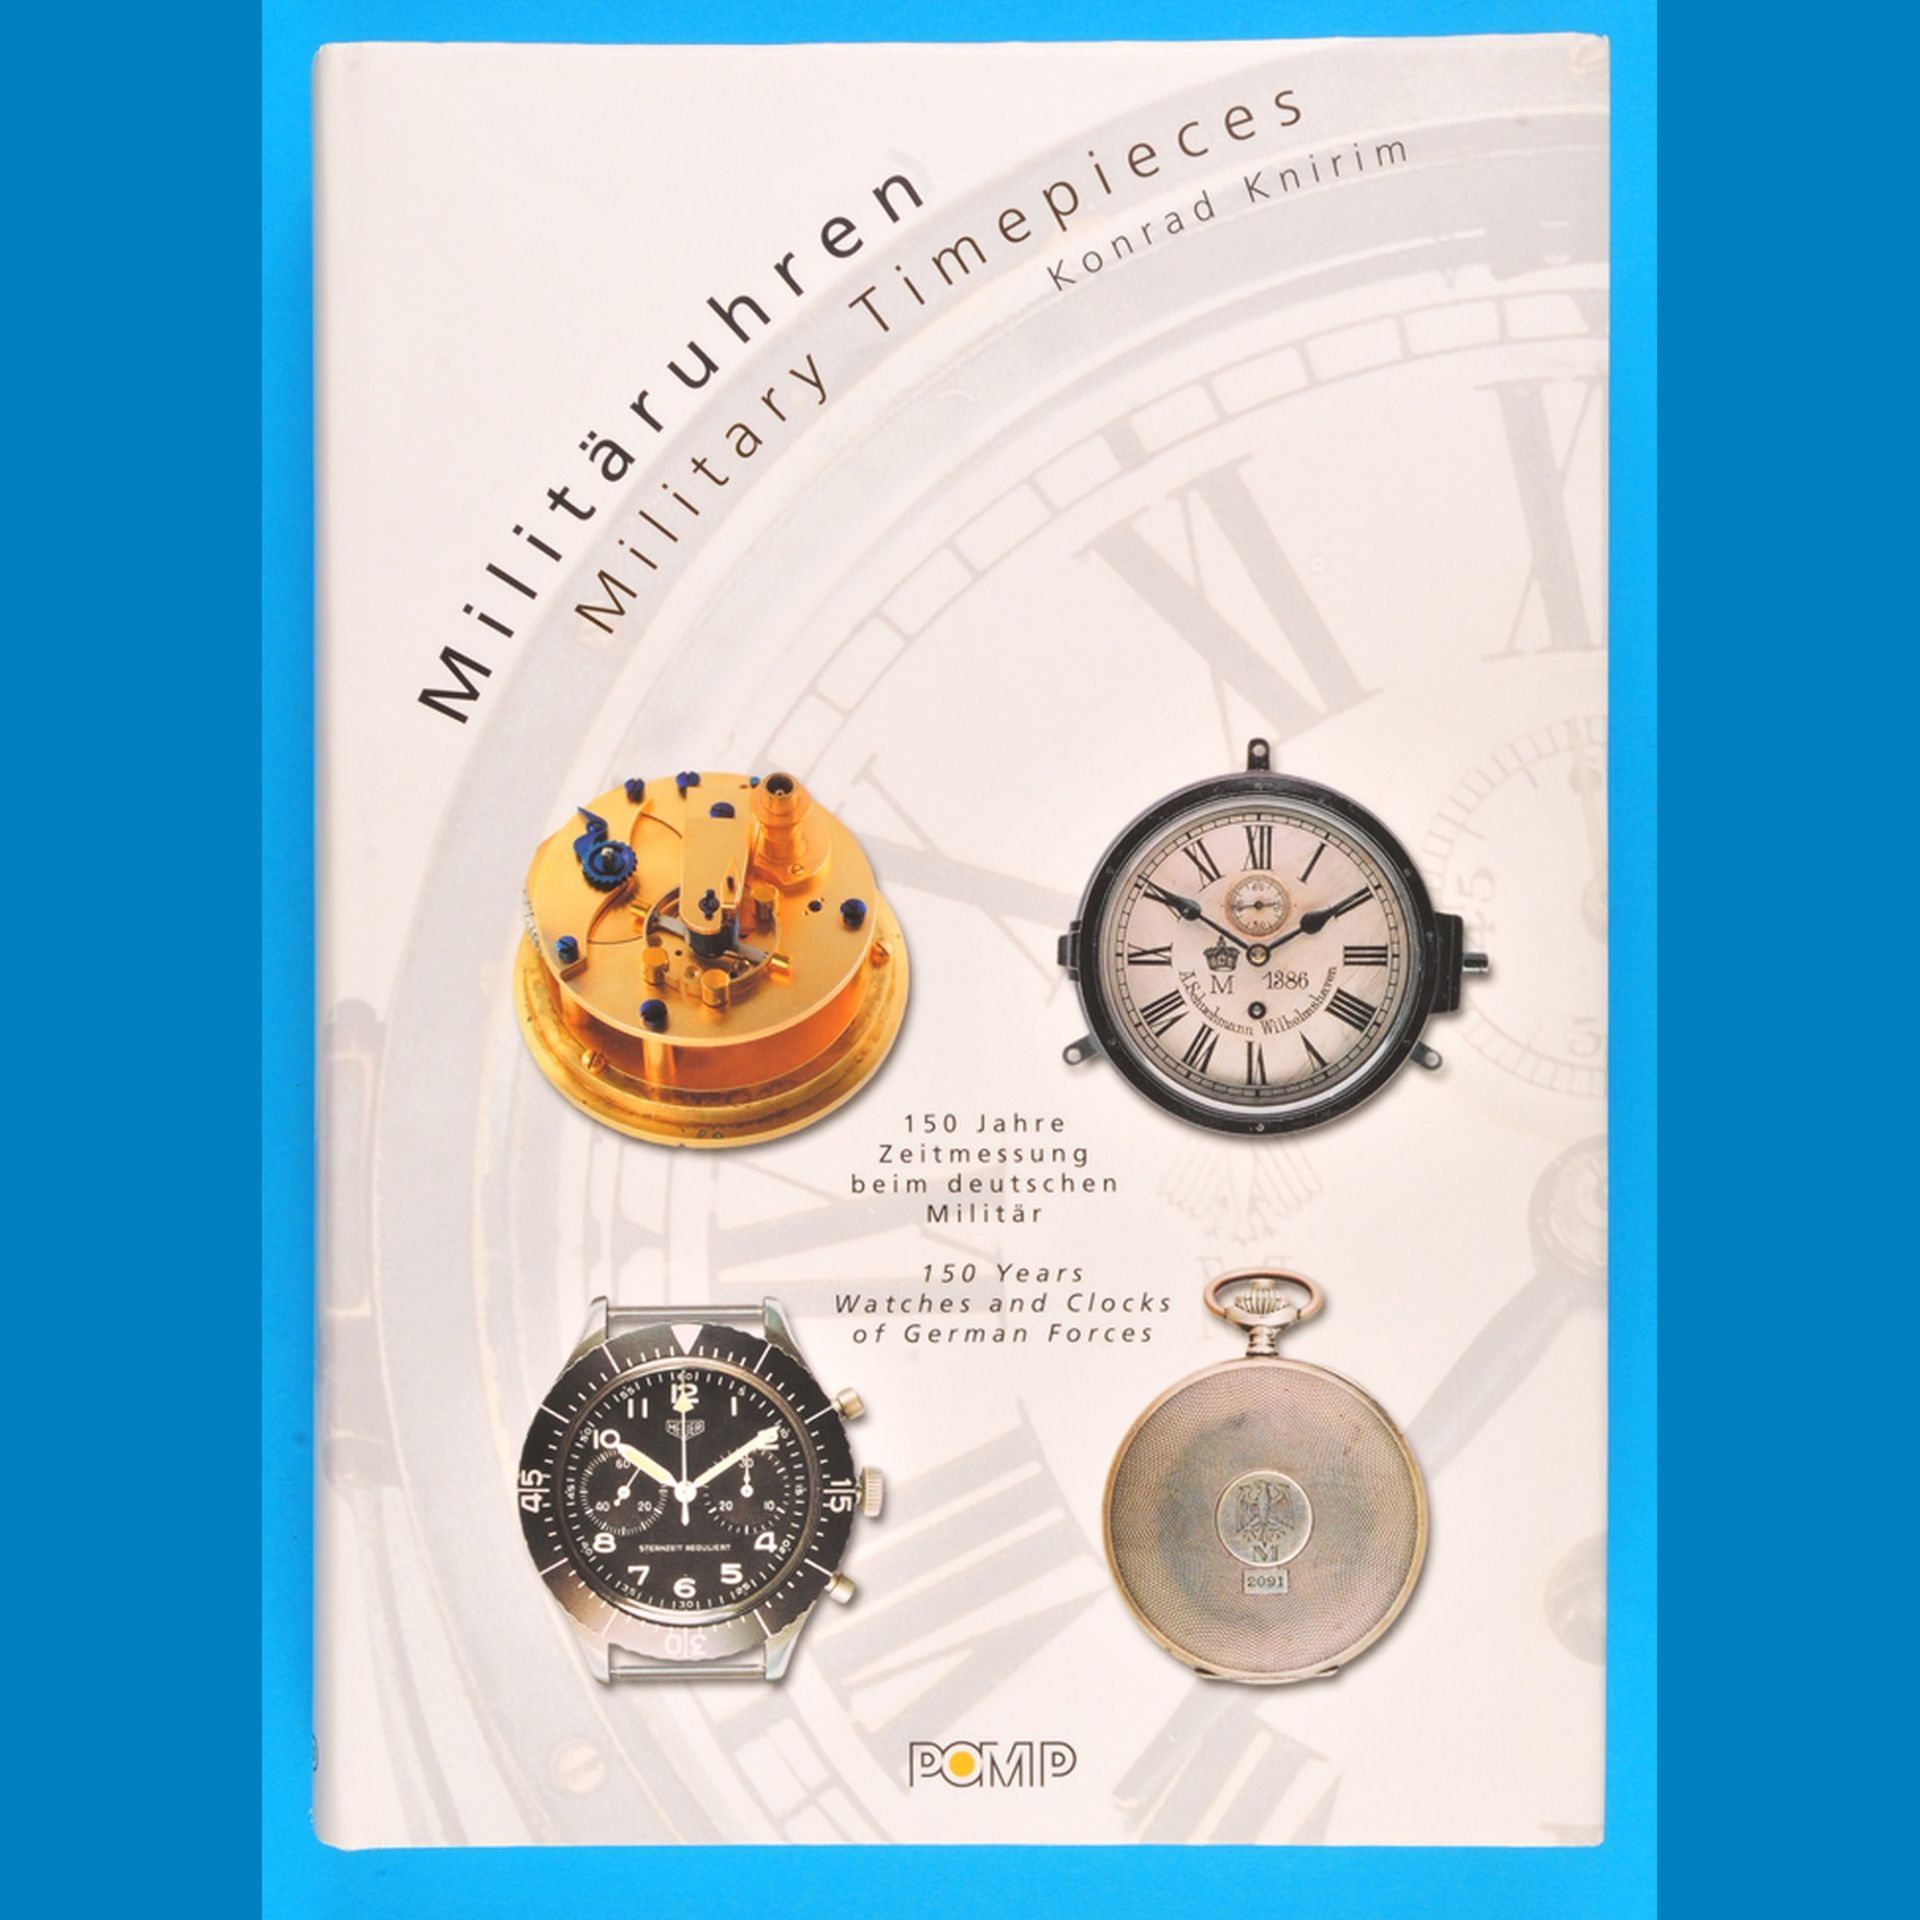 Konrad Knirim, Militäruhren, Military Timepieces, 150  Jahre Zeitmessung beim deutschen Militär, 150